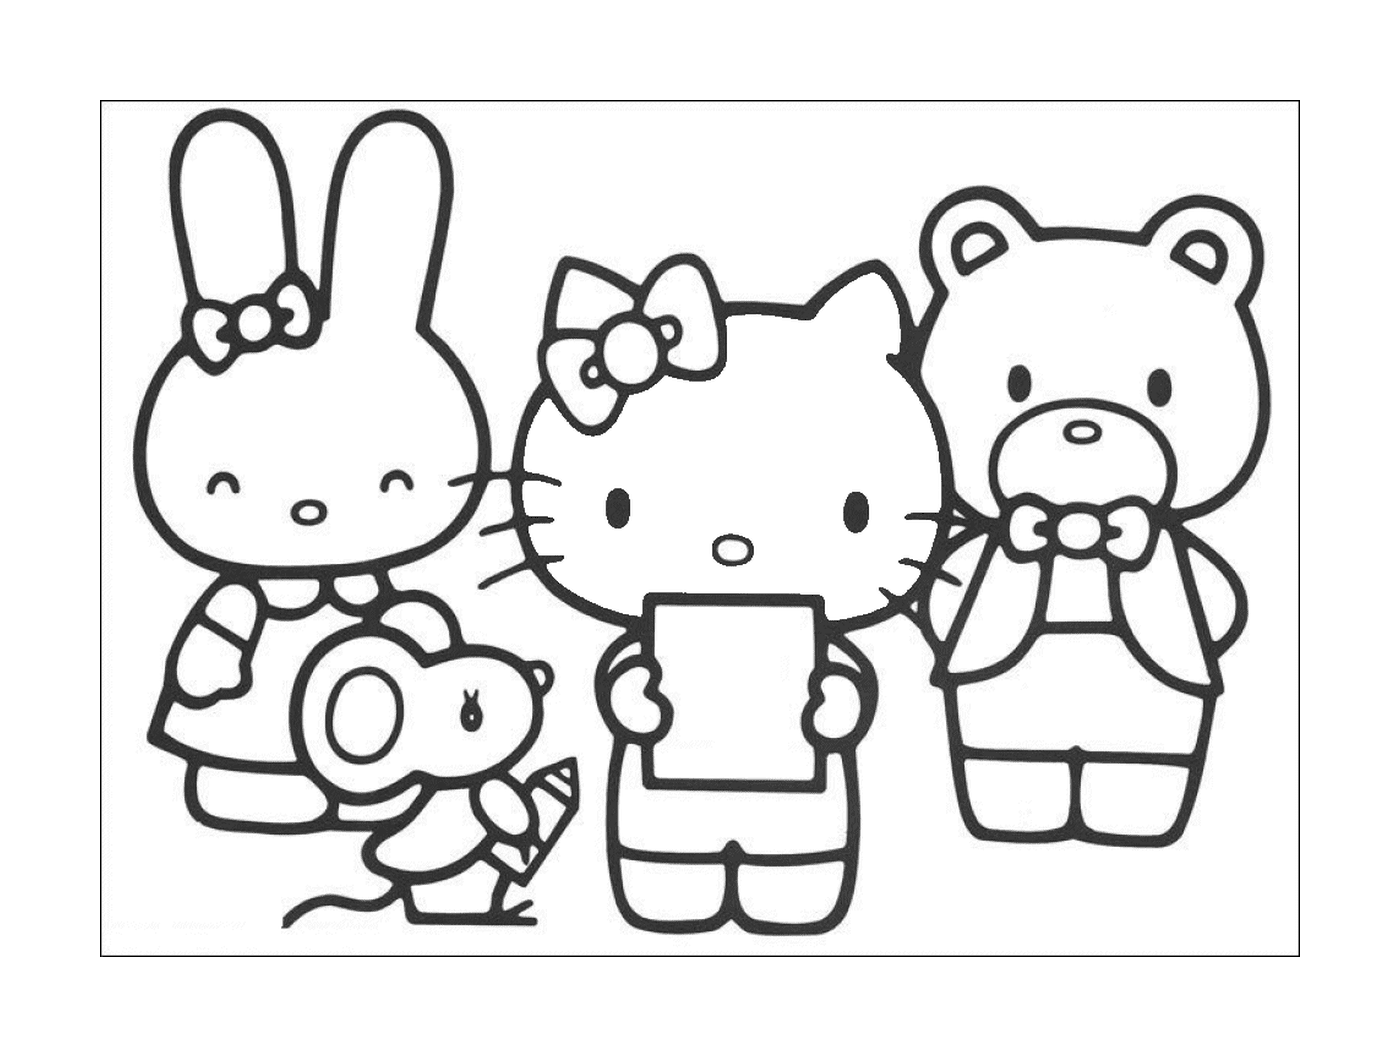  Un gruppo di amici Hello Kitty 